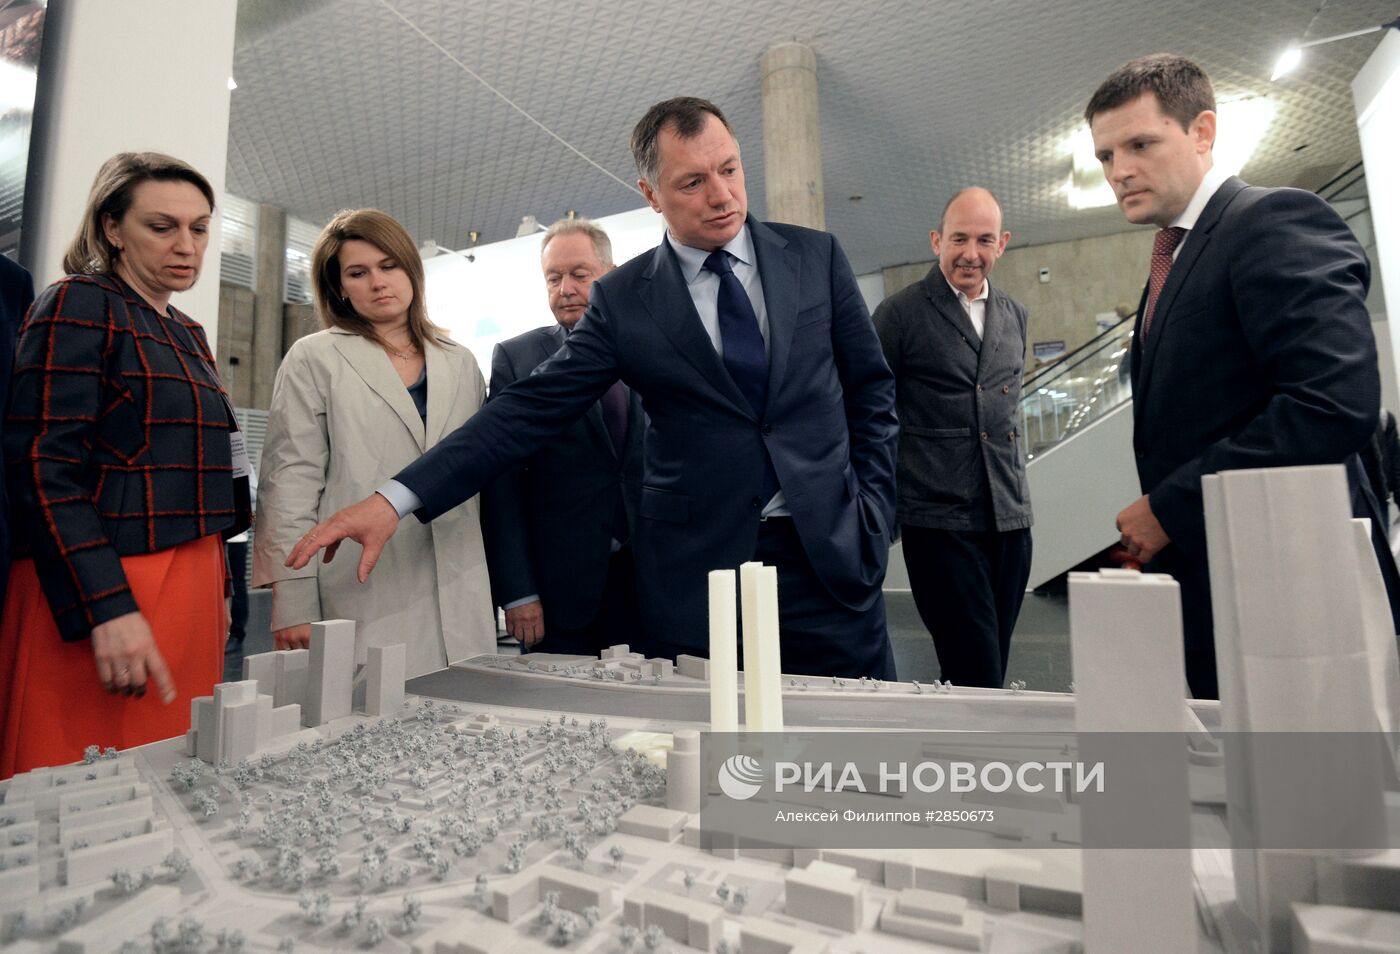 Открытие Пятой Московской Биеннале Архитектуры